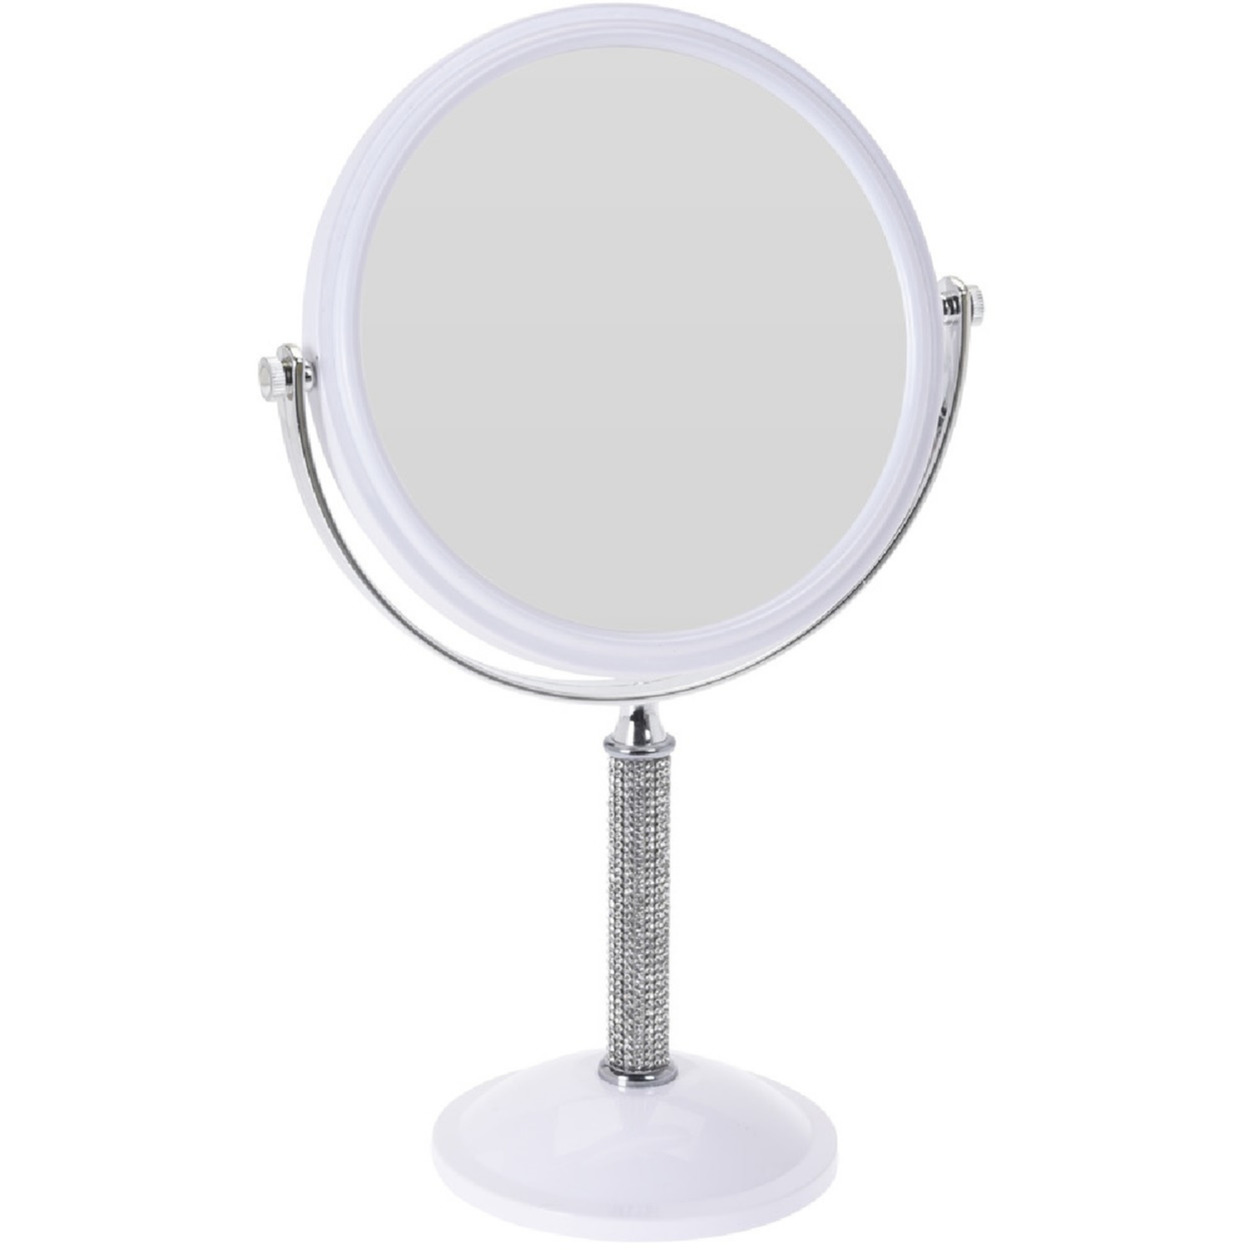 Witte make-up spiegel met strass steentjes rond vergrotend 17,5 x 33 cm